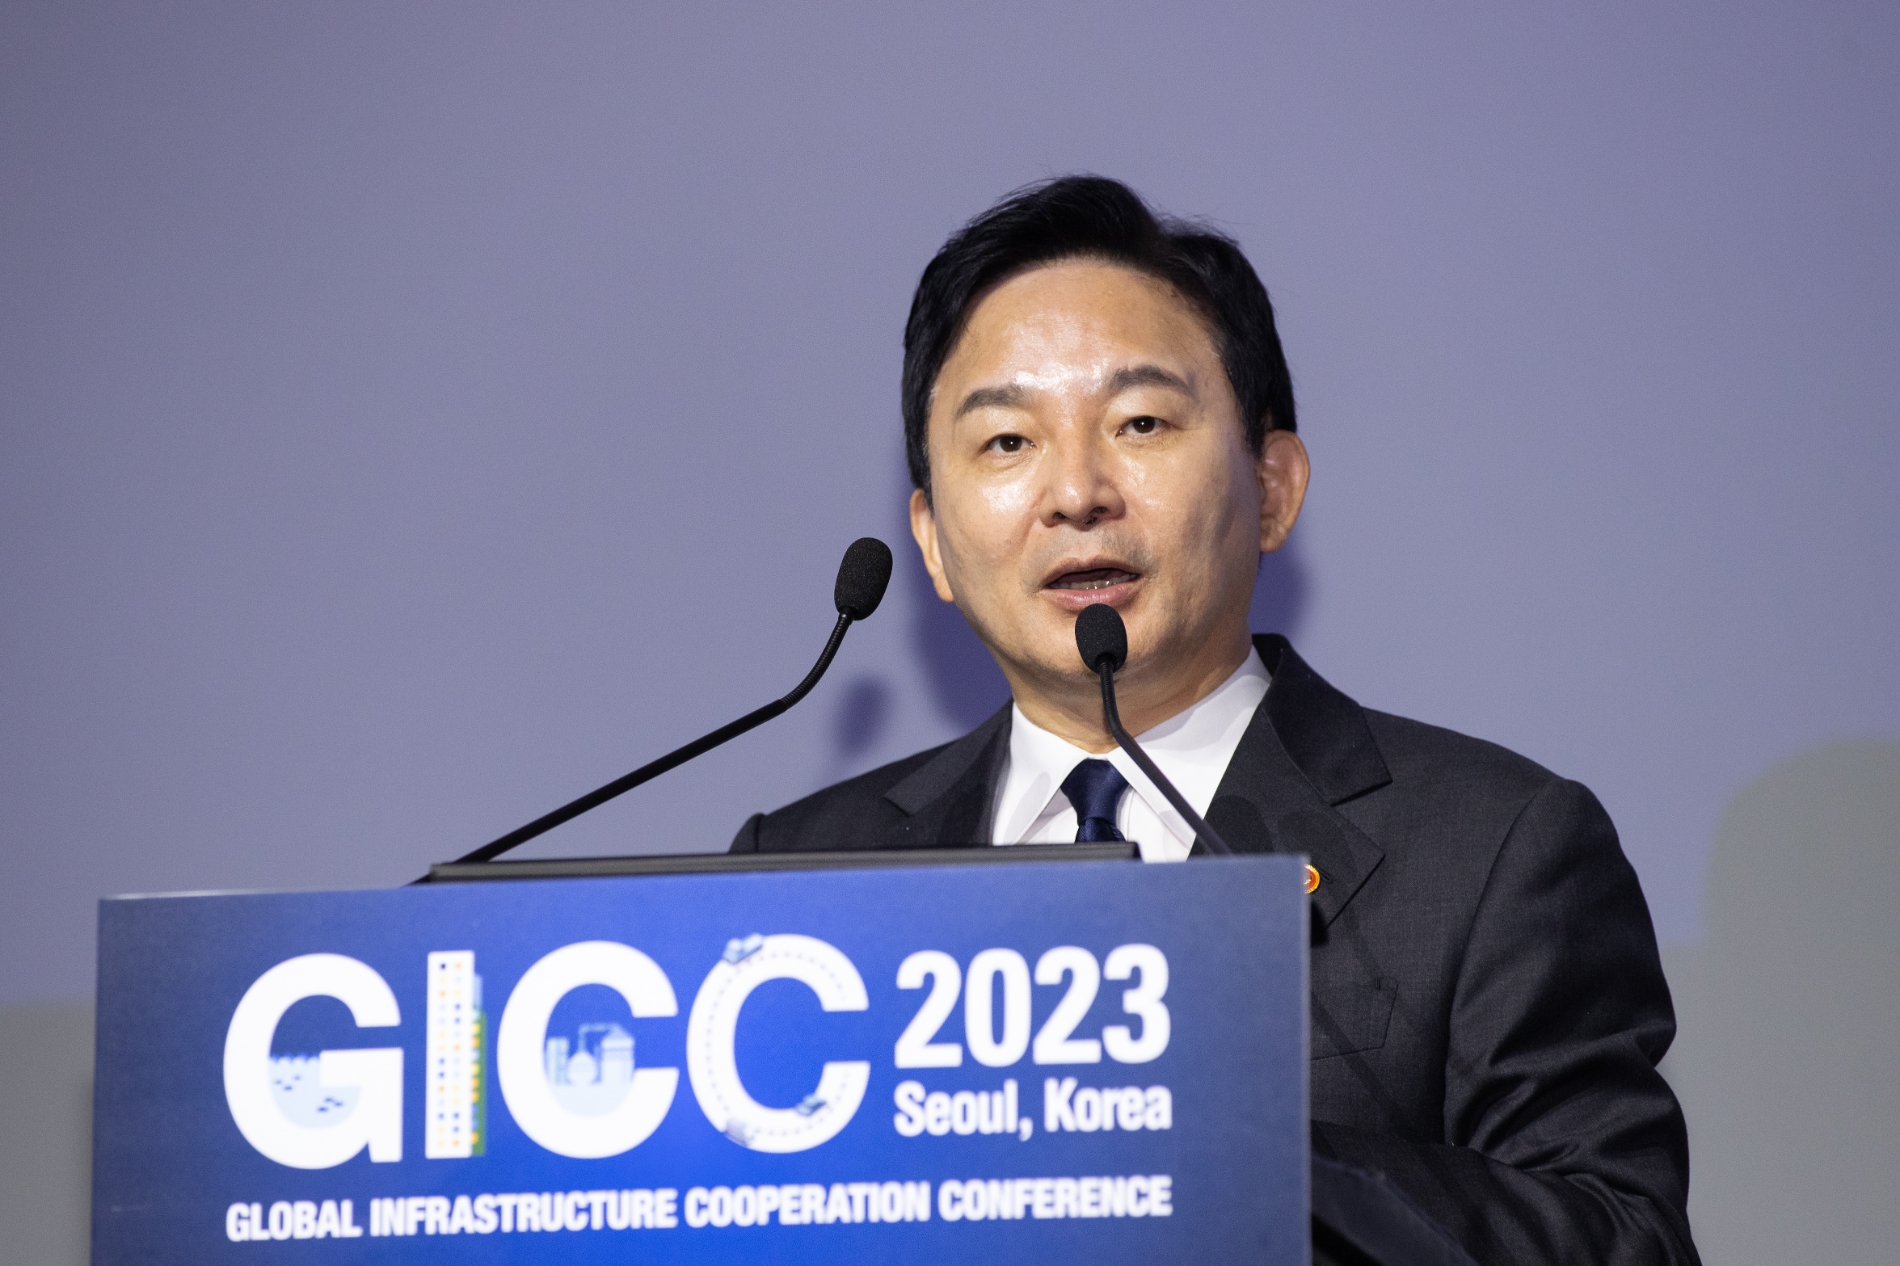 19일 열린 글로벌 인프라 협력 콘퍼런스(GICC)에서 원희룡 국토교통부 장관이 발언하고 있다. / 사진제공=국토교통부